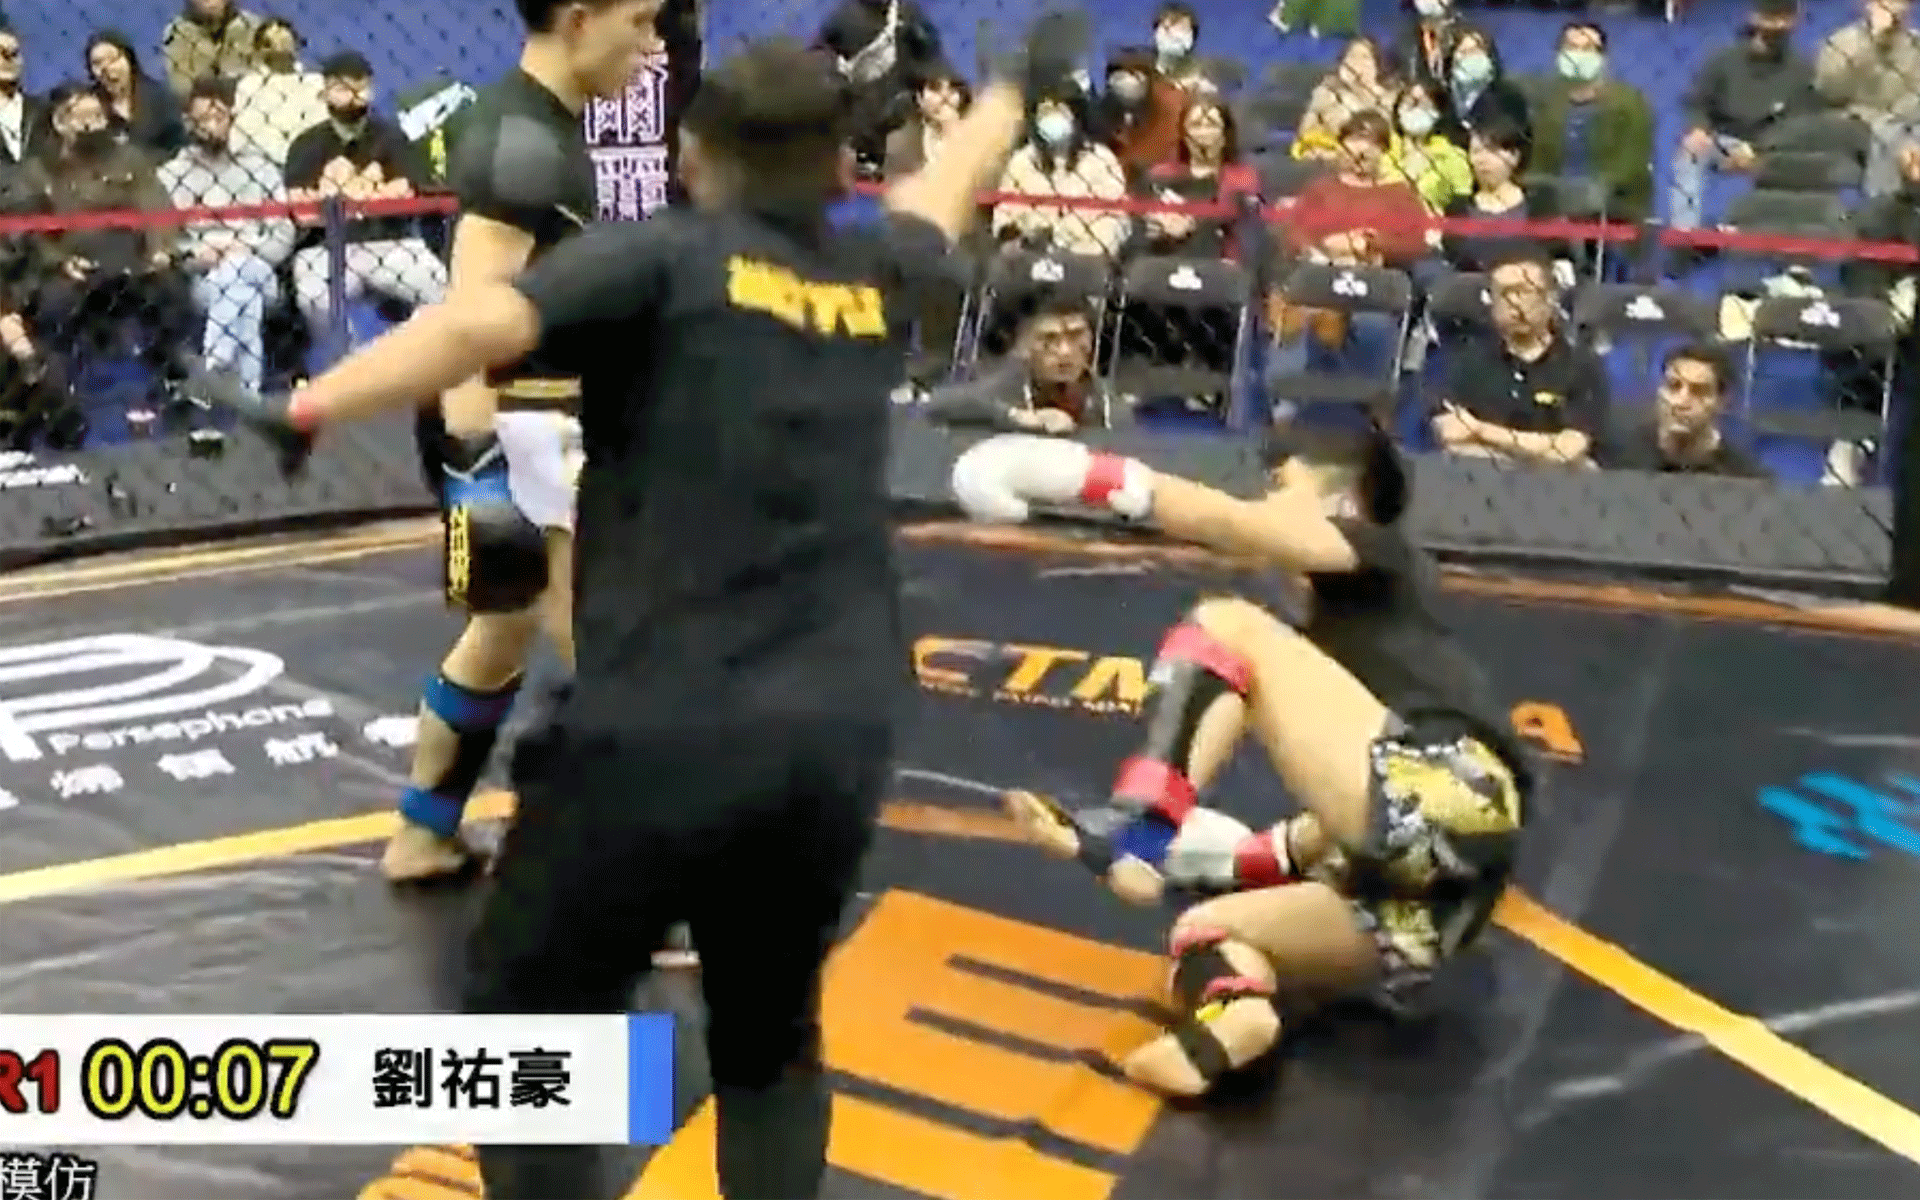 🎥 'WOW wat een finish!' Taiwanees scoort meesterlijke knock-out tijdens kooigevecht